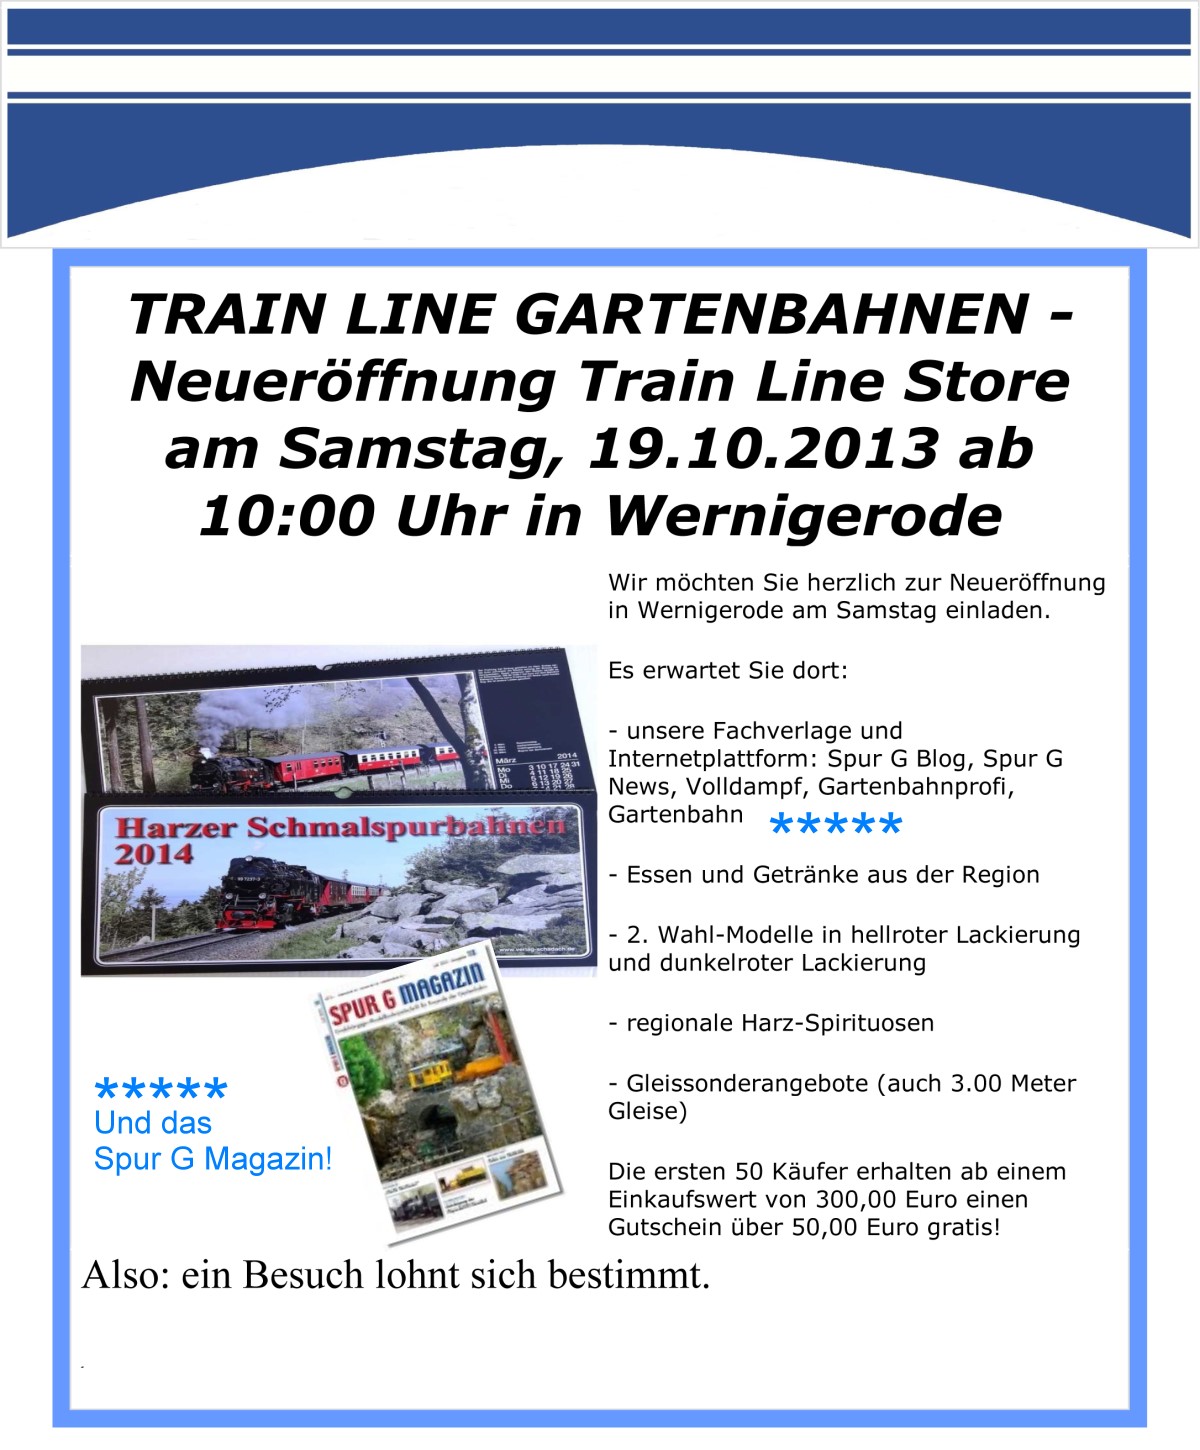 Geschäftseröffnung TrainLine Gartenbahnen am 19.10.2013 in Wernigerode um 10:00 Uhr geht es los! 